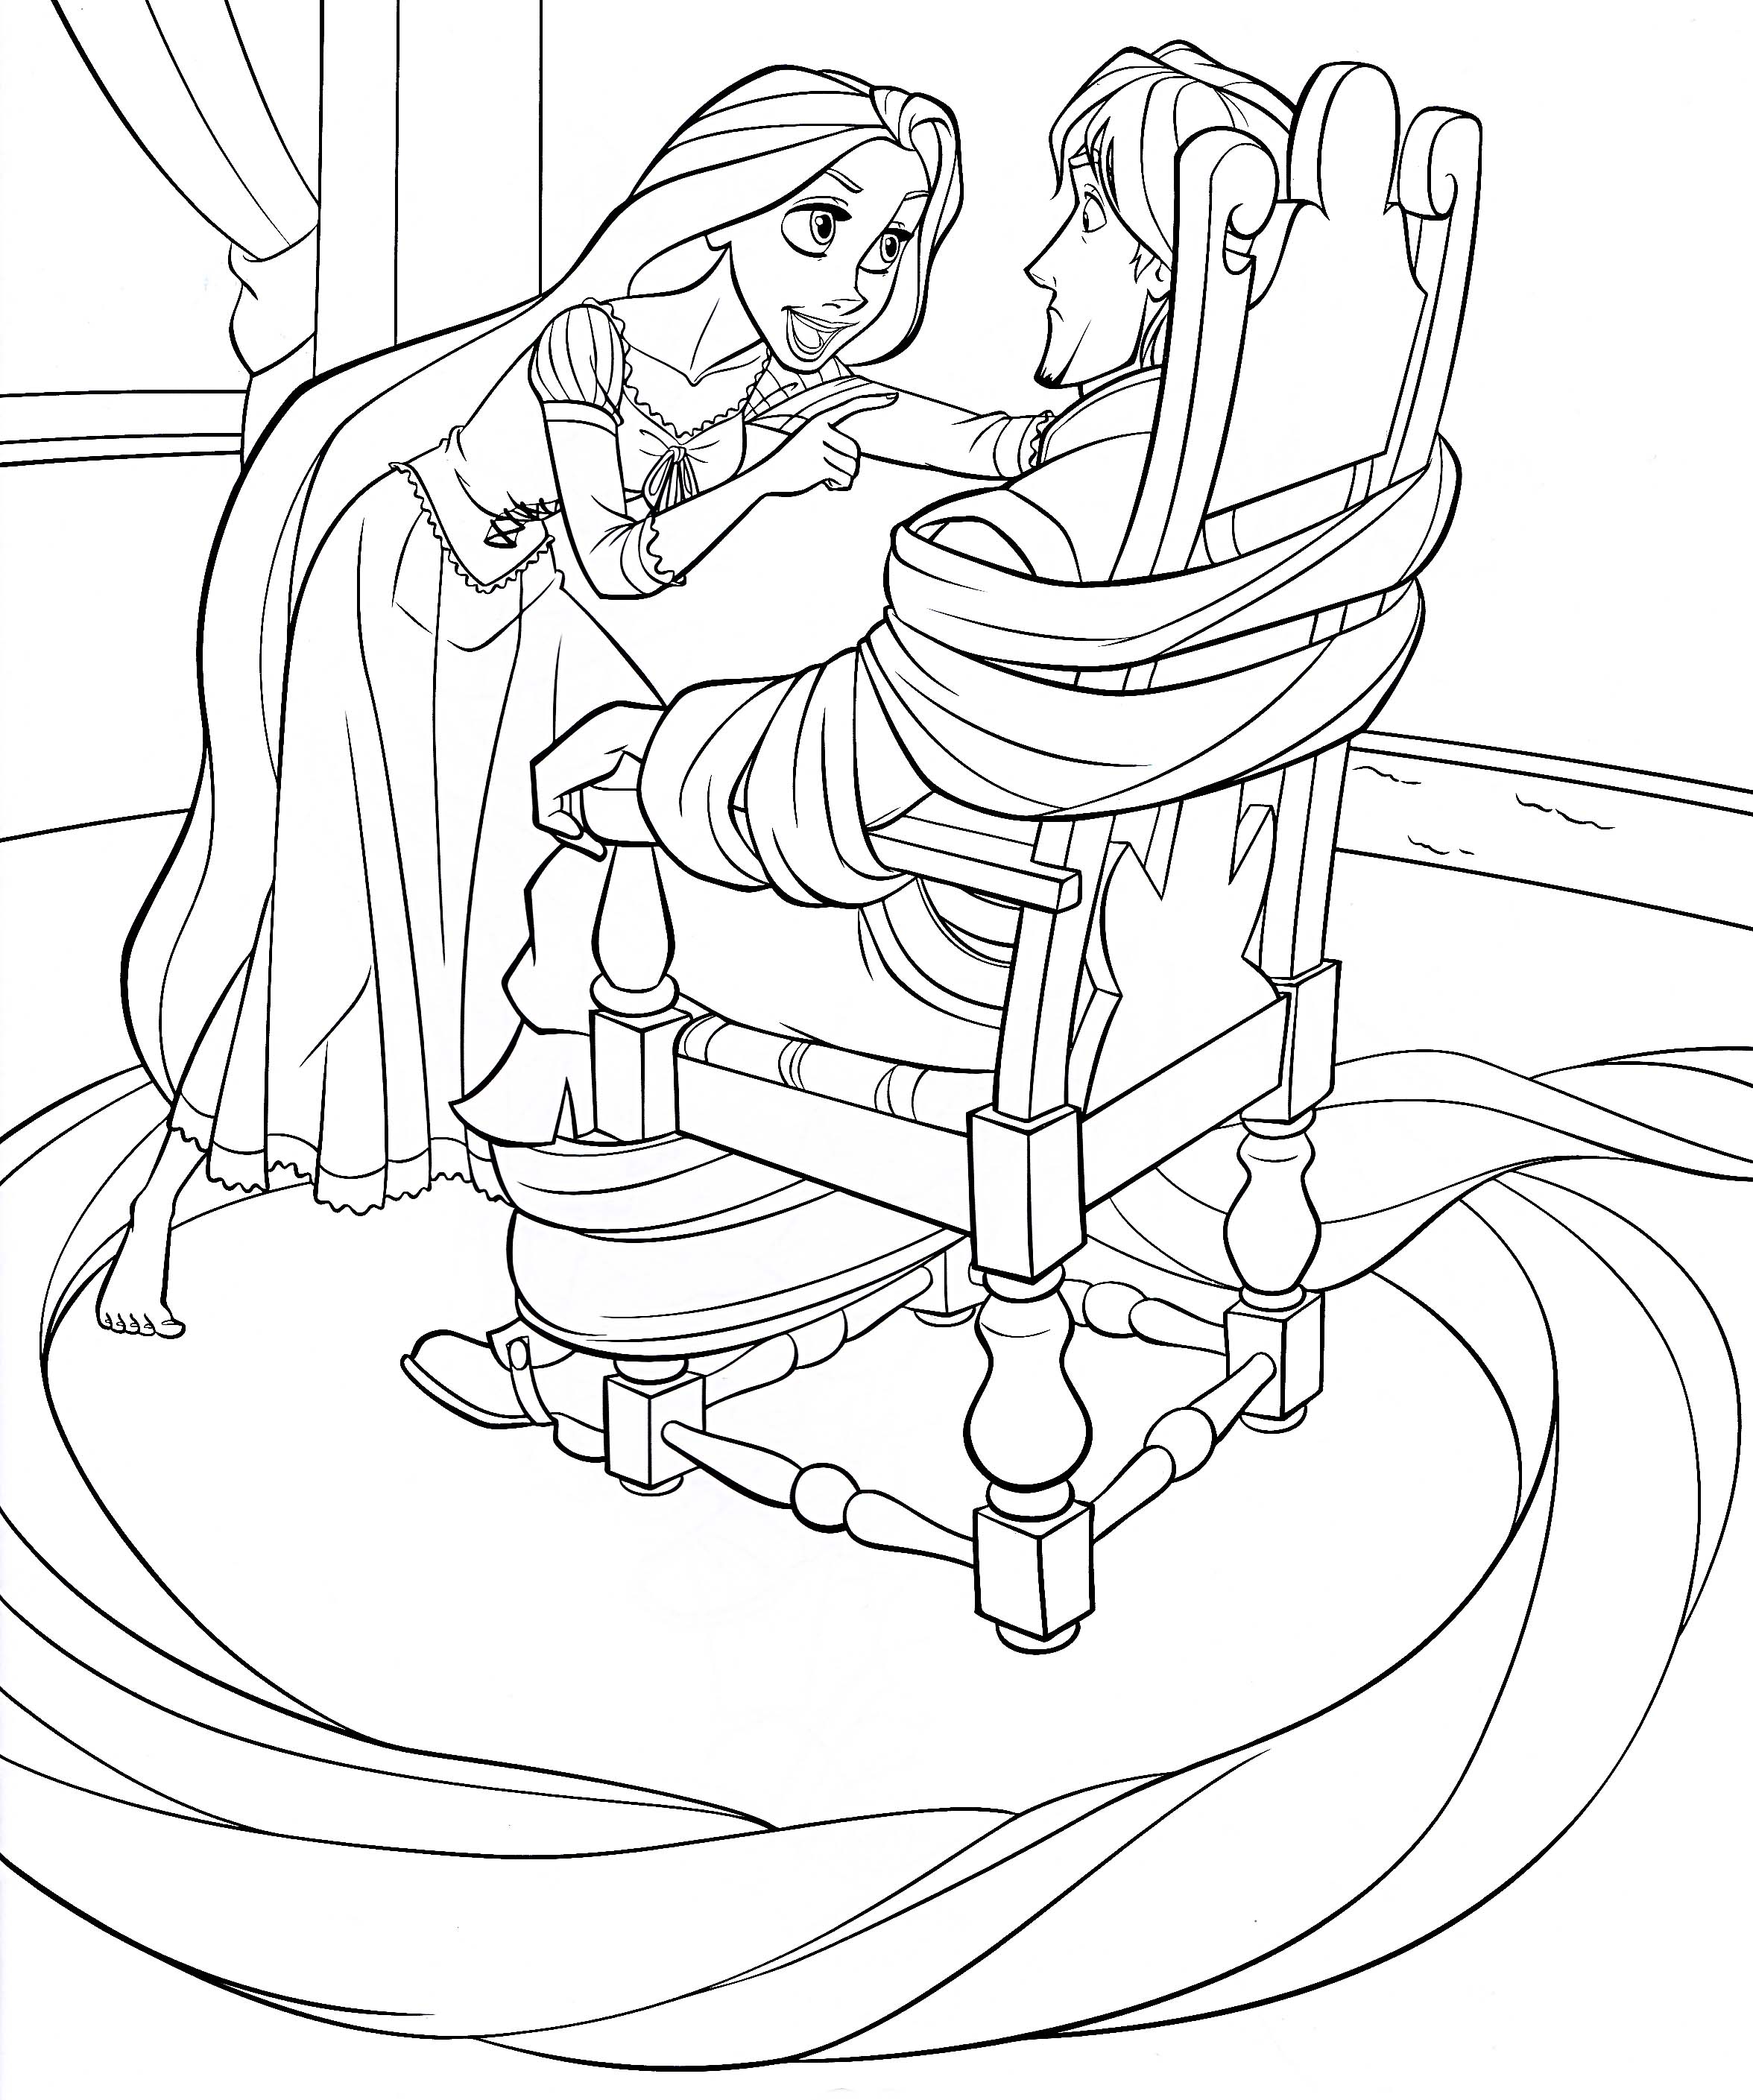 Rapunzel prendendo principe na cadeira